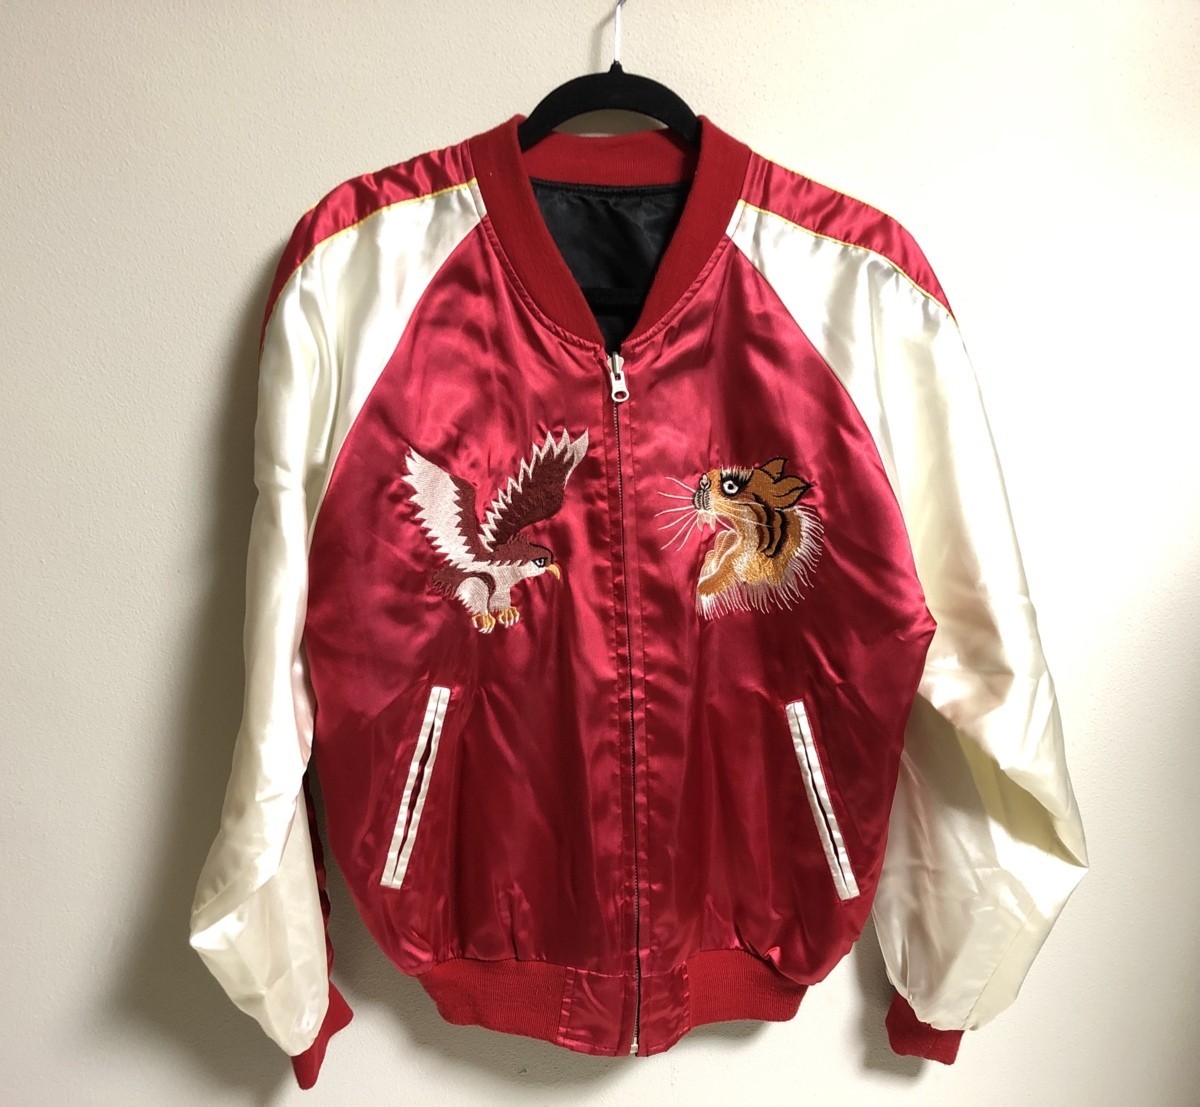 スカジャン メンズ ビンテージ リバーシブル 古着 鷹 虎 龍 souvenir jacket STYLED IN italy france.U.S.A. Lサイズ